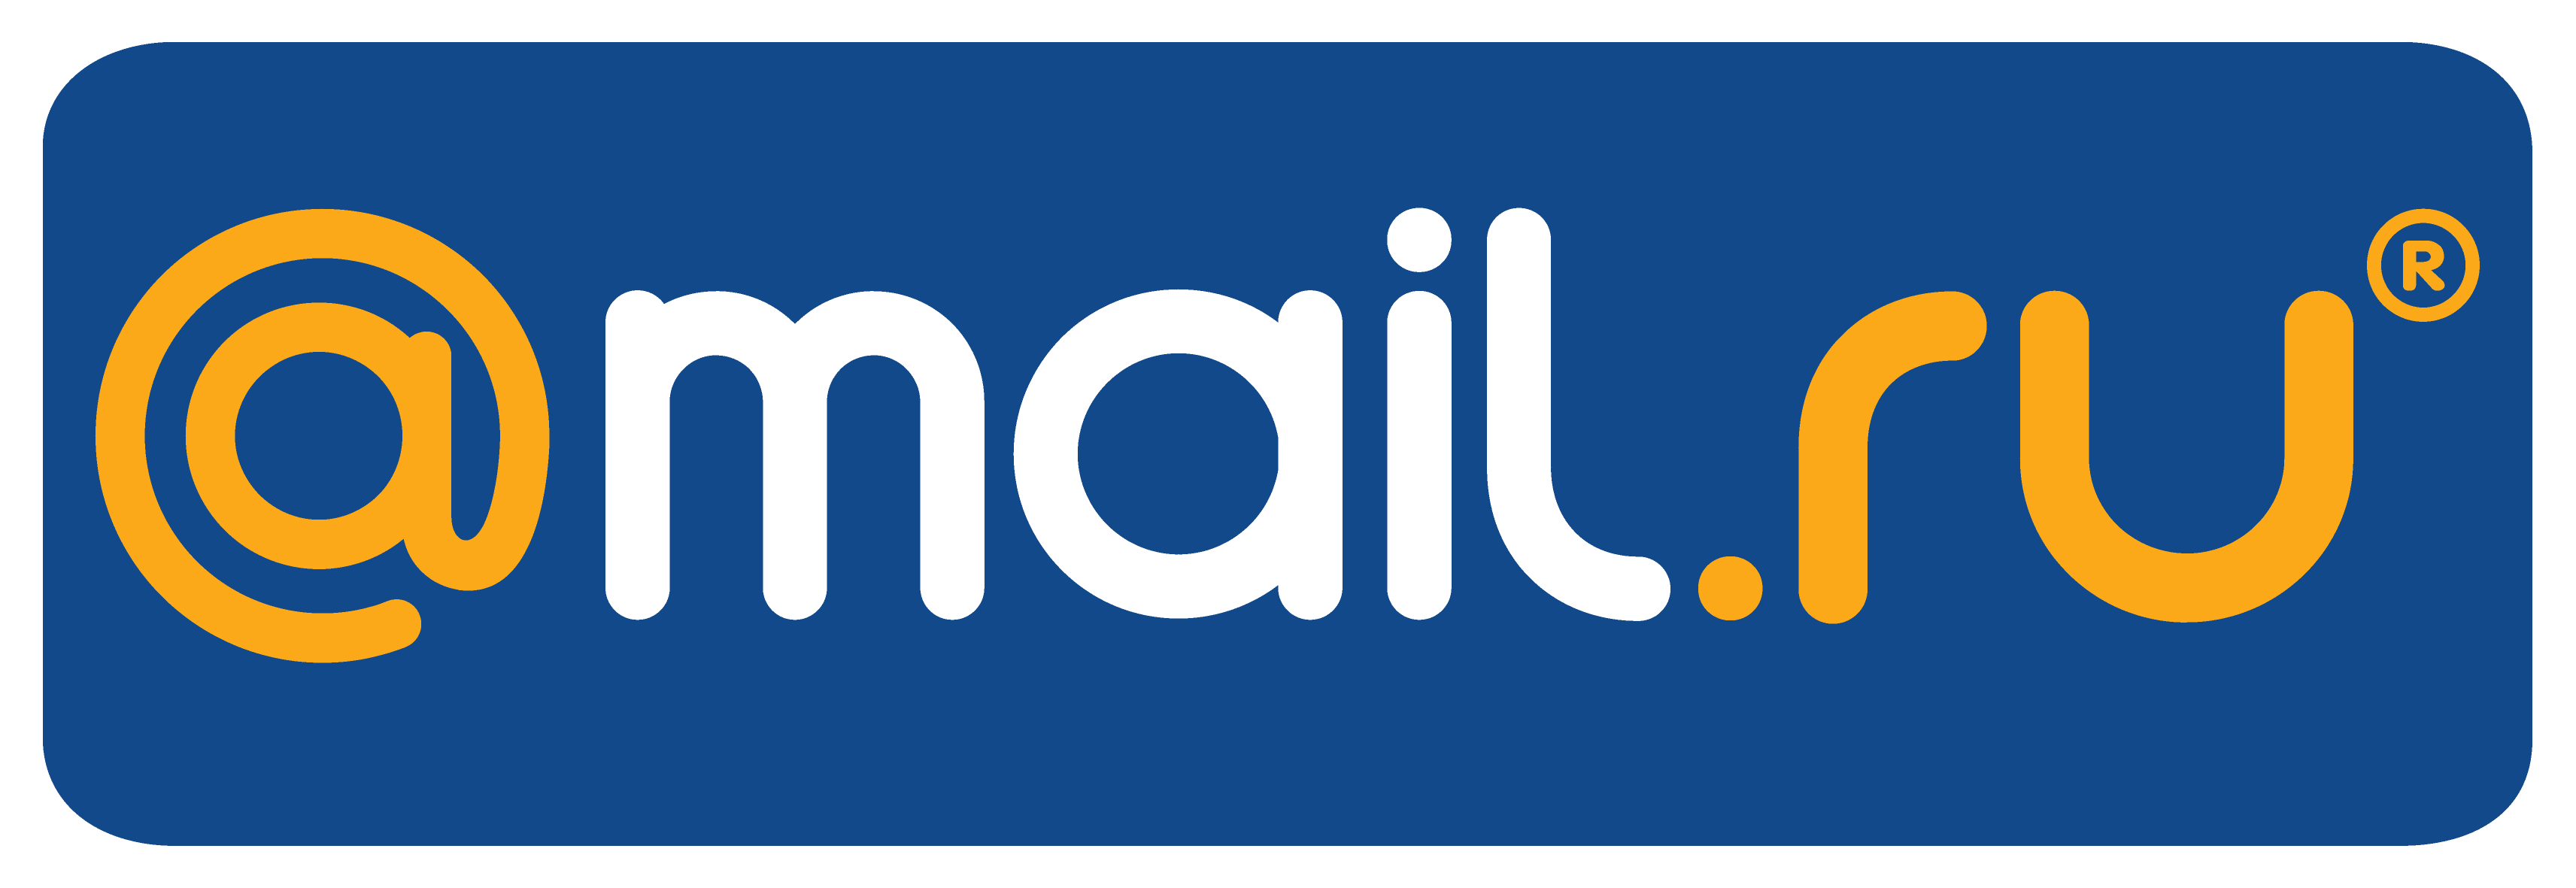 Ru. Mail Group логотип. Фото майл ру. Почта mail.ru. Mail.ru логотип на прозрачном фоне.